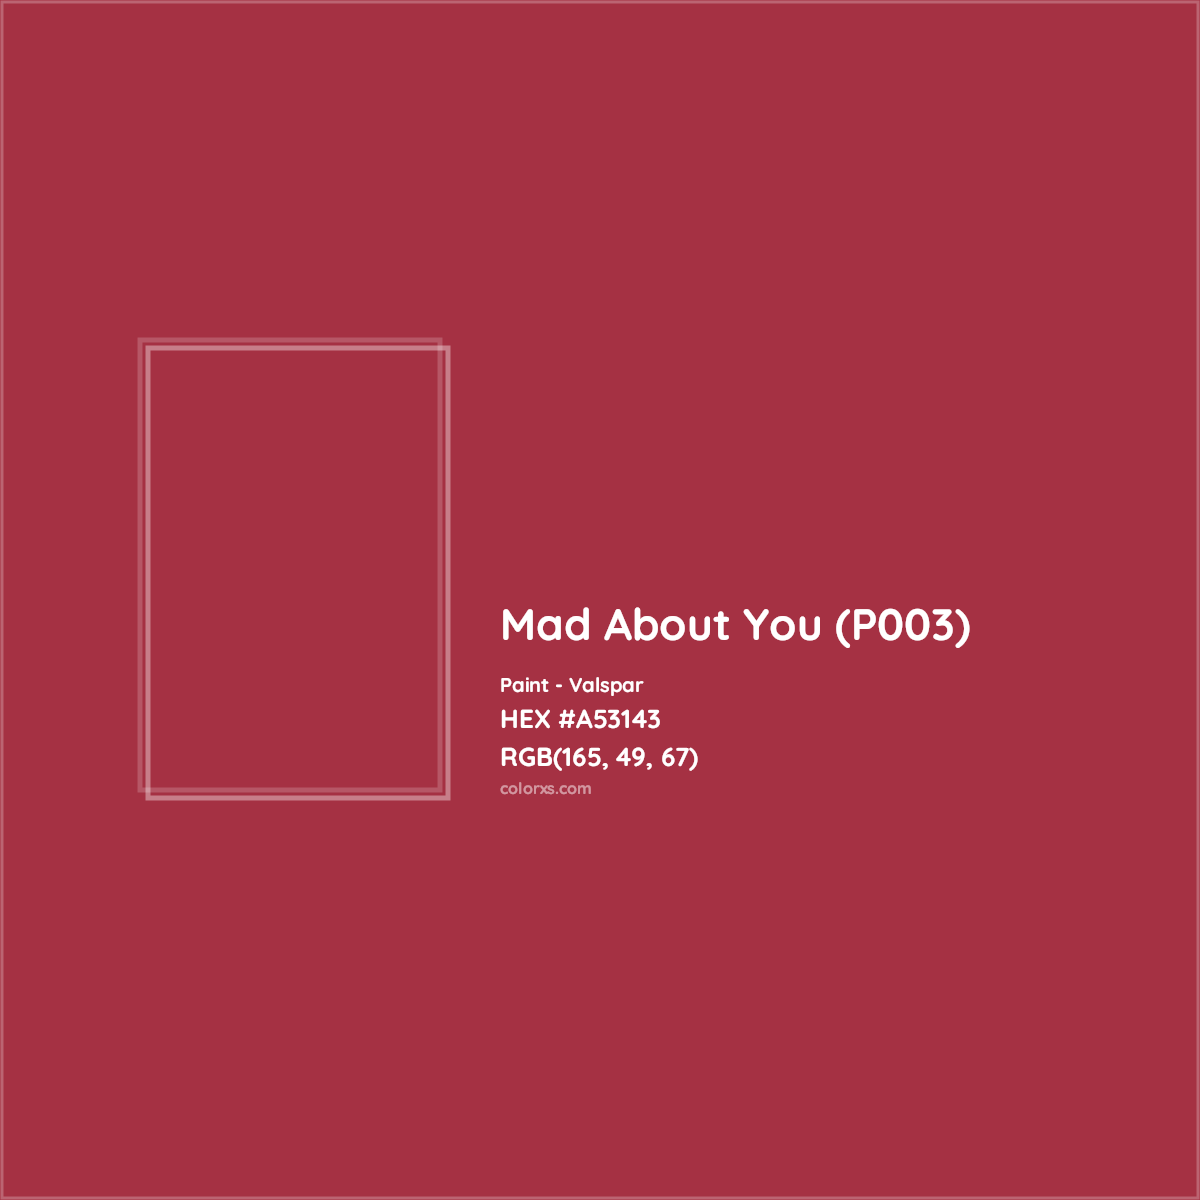 HEX #A53143 Mad About You (P003) Paint Valspar - Color Code